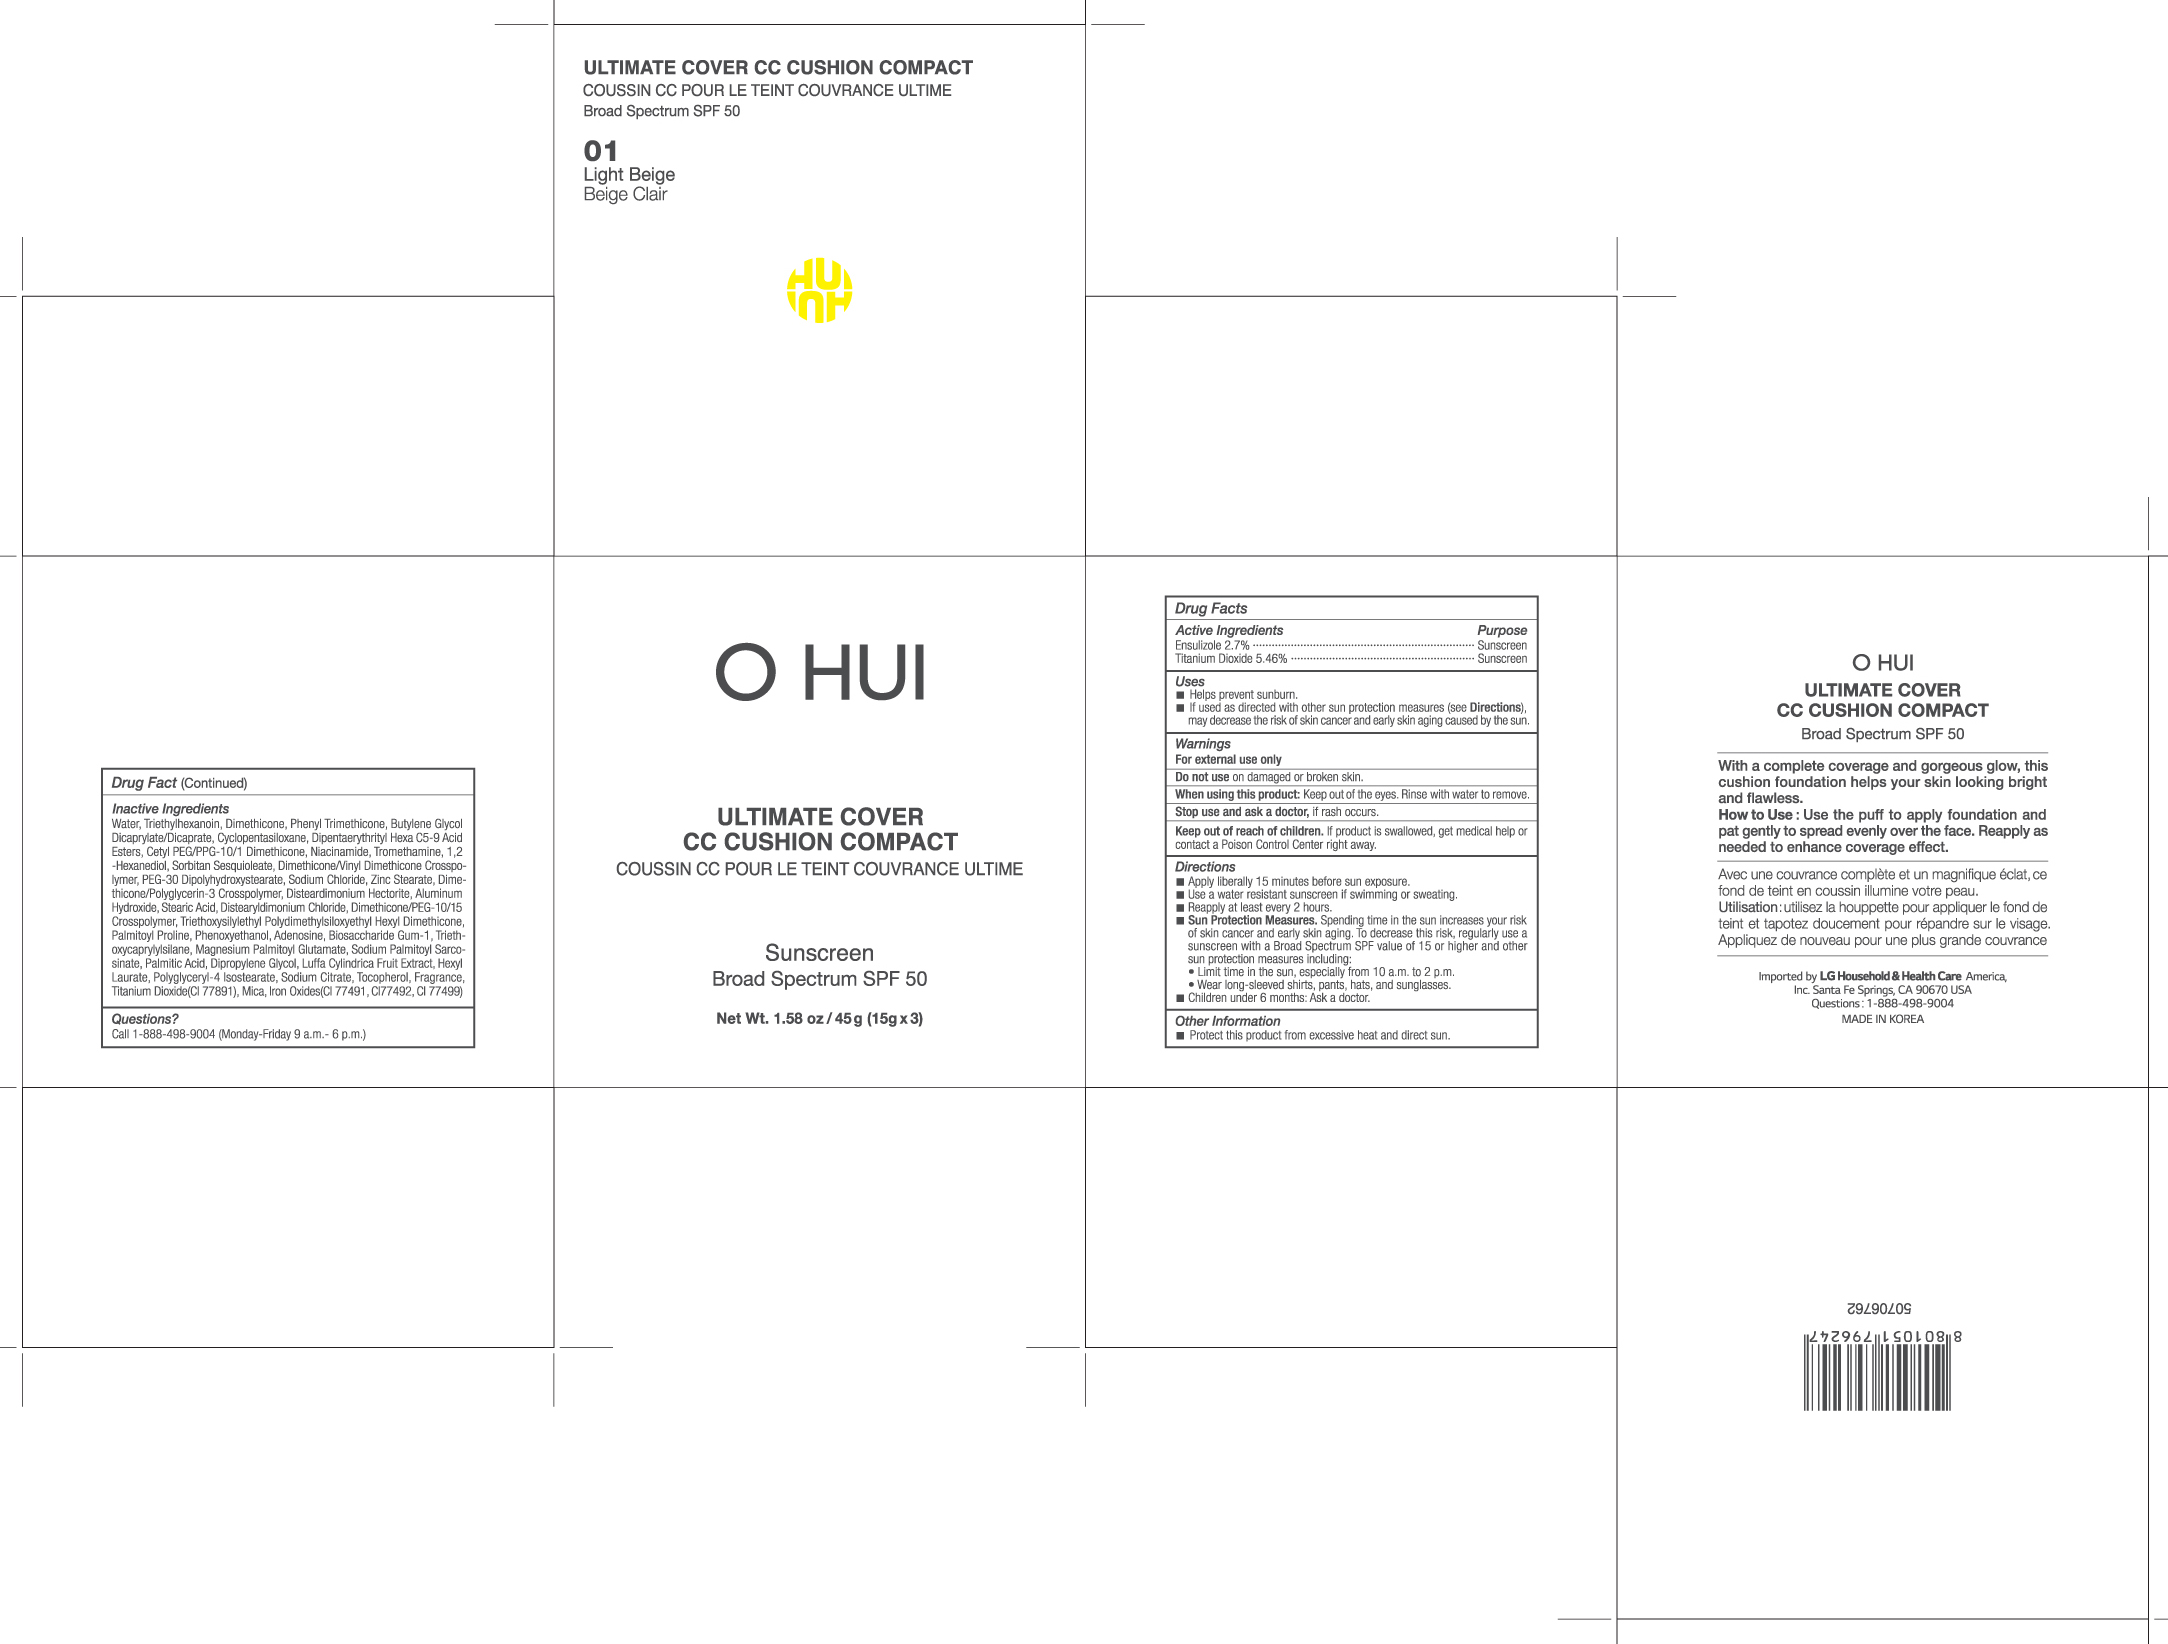 OHUI Ultimate Cover CC Cushion Compact 01